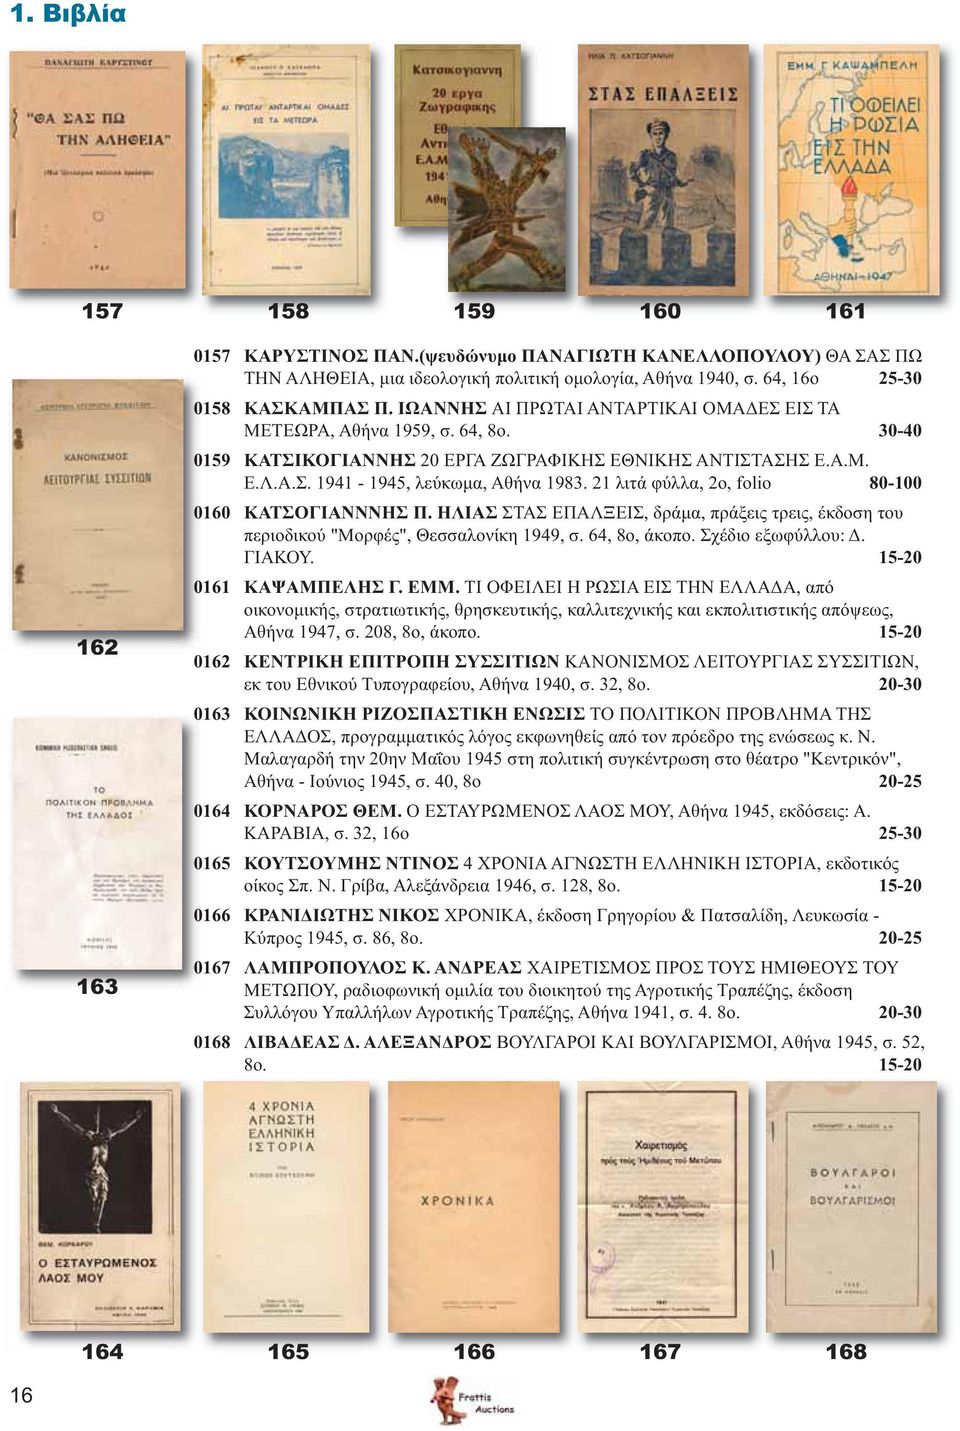 21 λιτά φύλλα, 2ο, folio 80-100 0160 ΚΑΤΣΟΓΙΑΝΝΝΗΣ Π. ΗΛΙΑΣ ΣΤΑΣ ΕΠΑΛΞΕΙΣ, δράμα, πράξεις τρεις, έκδοση του περιοδικού "Μορφές", Θεσσαλονίκη 1949, σ. 64, 8ο, άκοπο. Σχέδιο εξωφύλλου: Δ. ΓΙΑΚΟΥ.